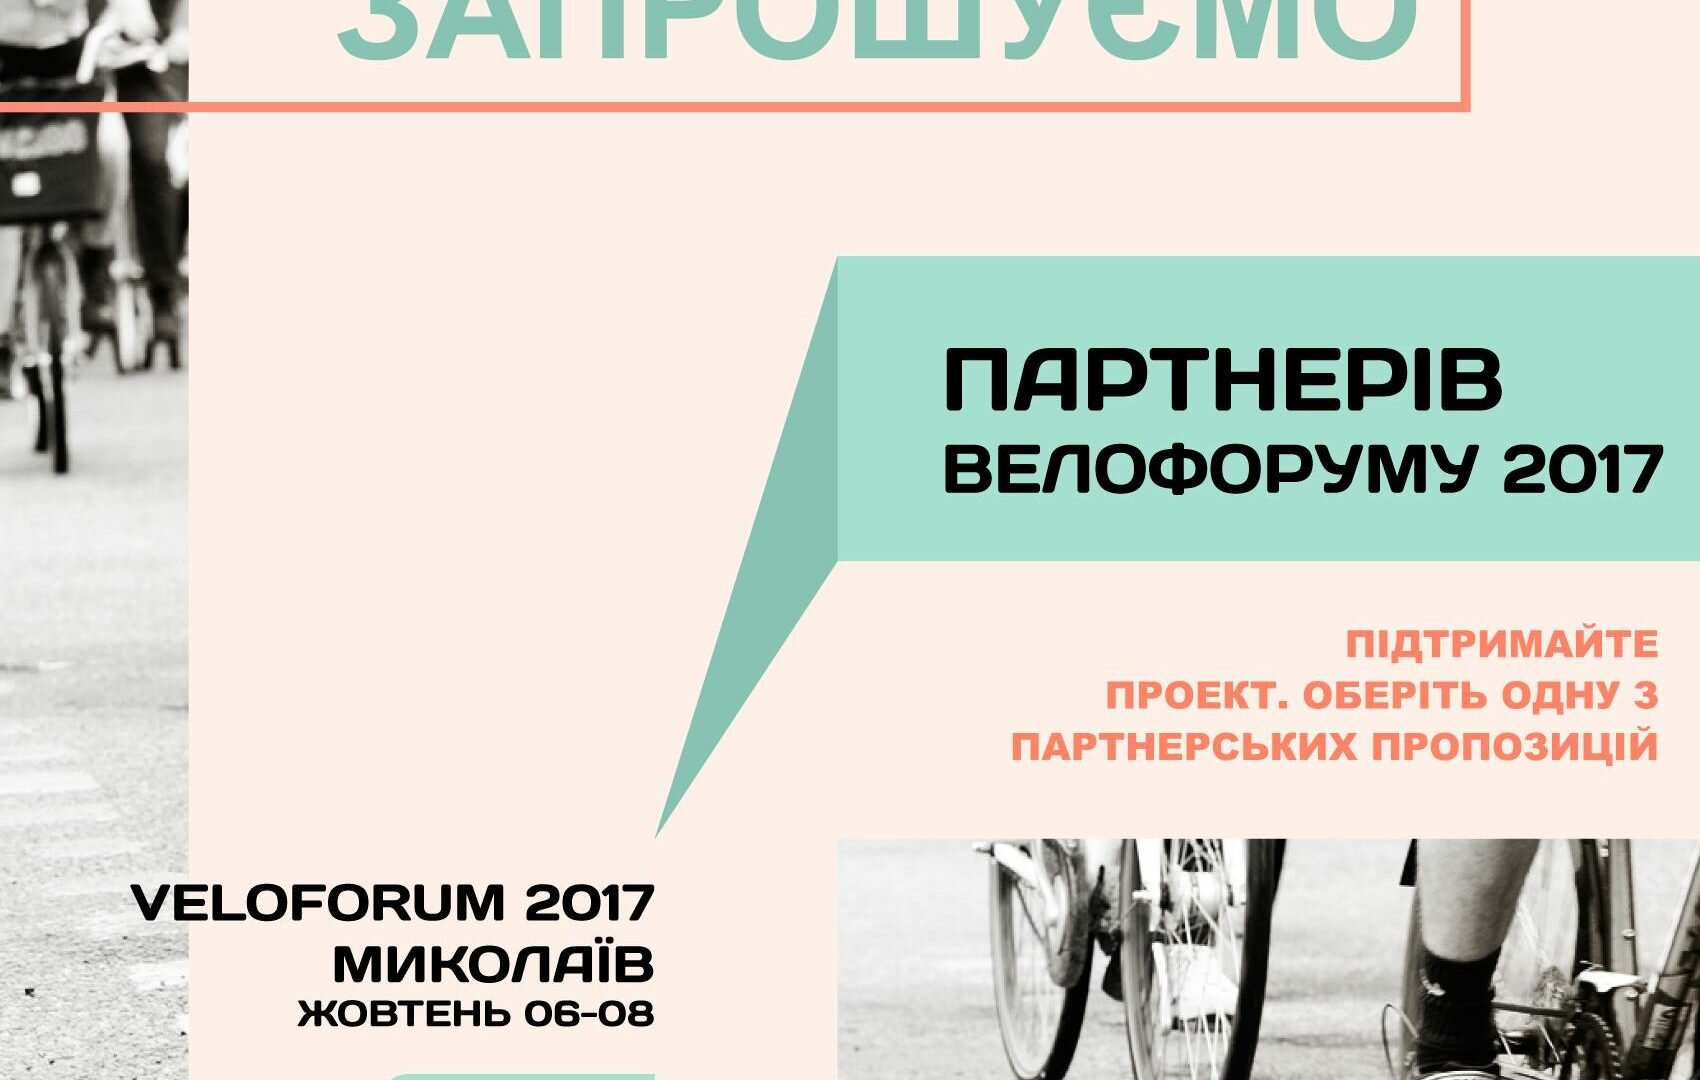 Call for partners of Veloforum 2017 Mykolaiv